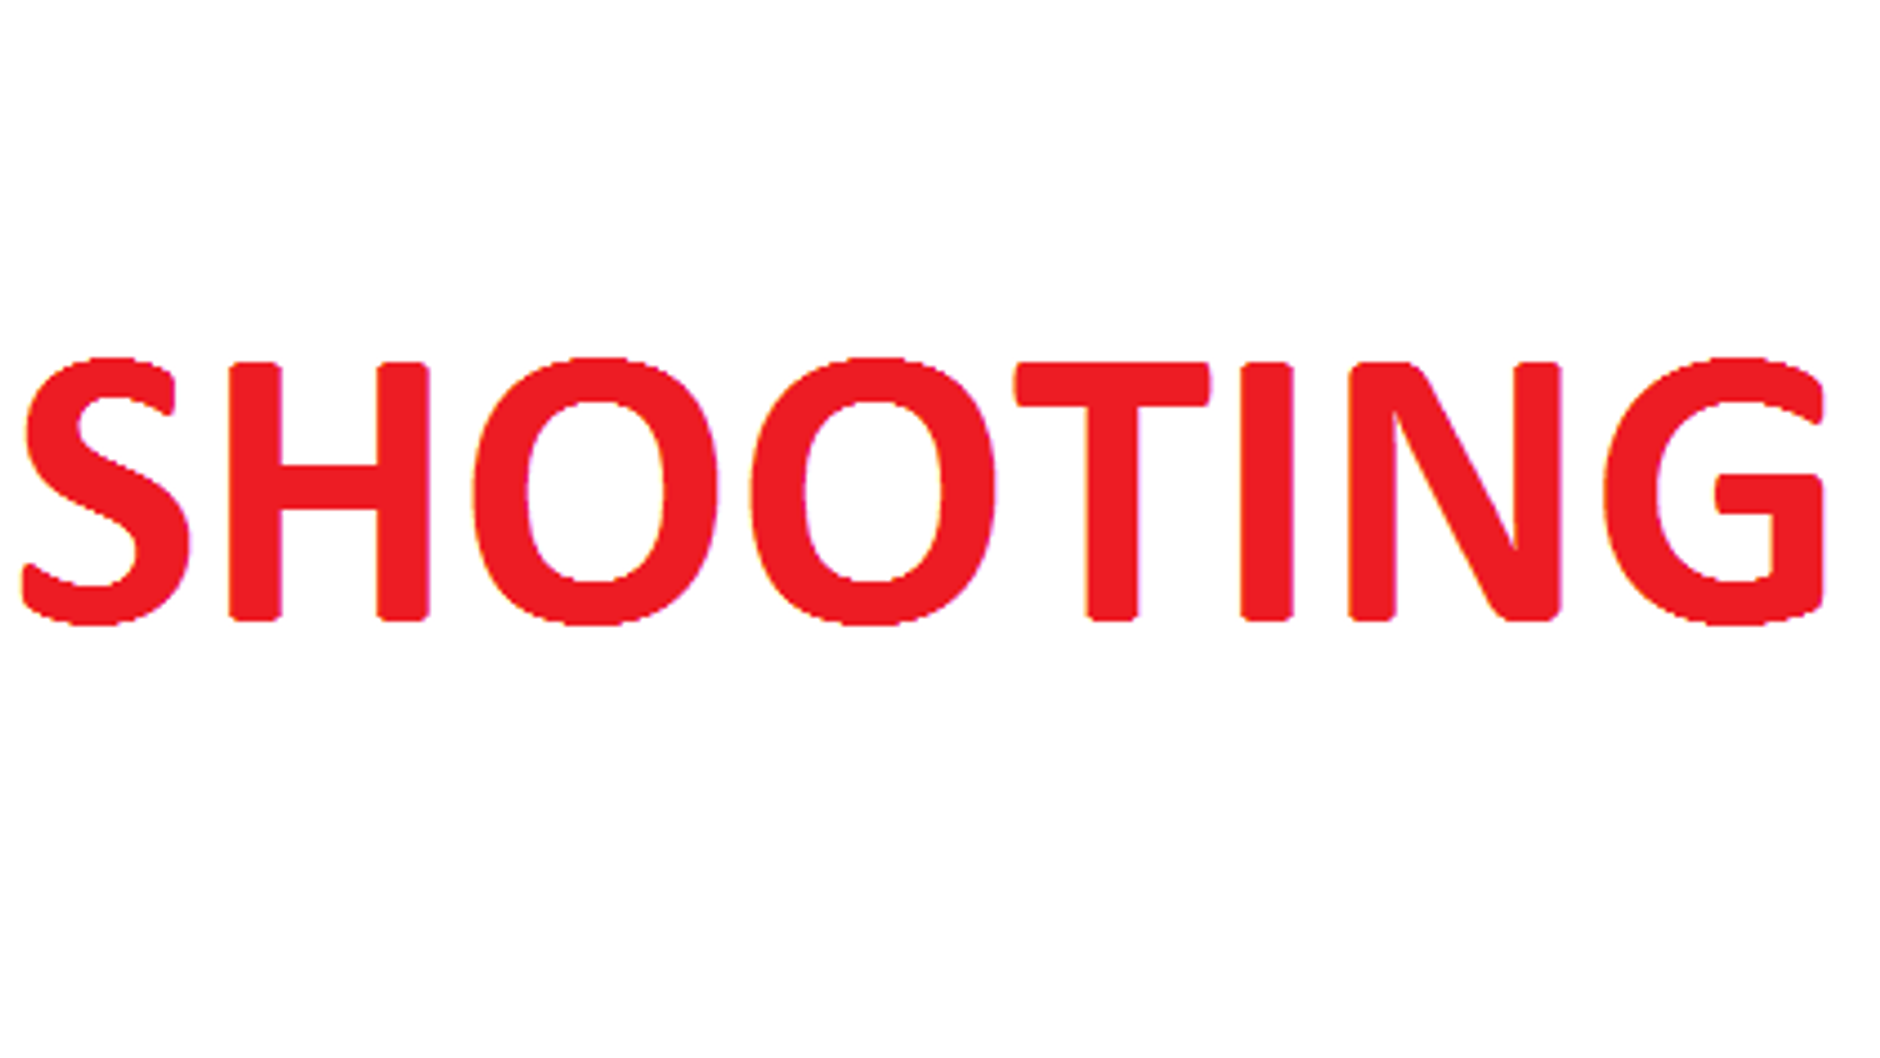 SHOOTING